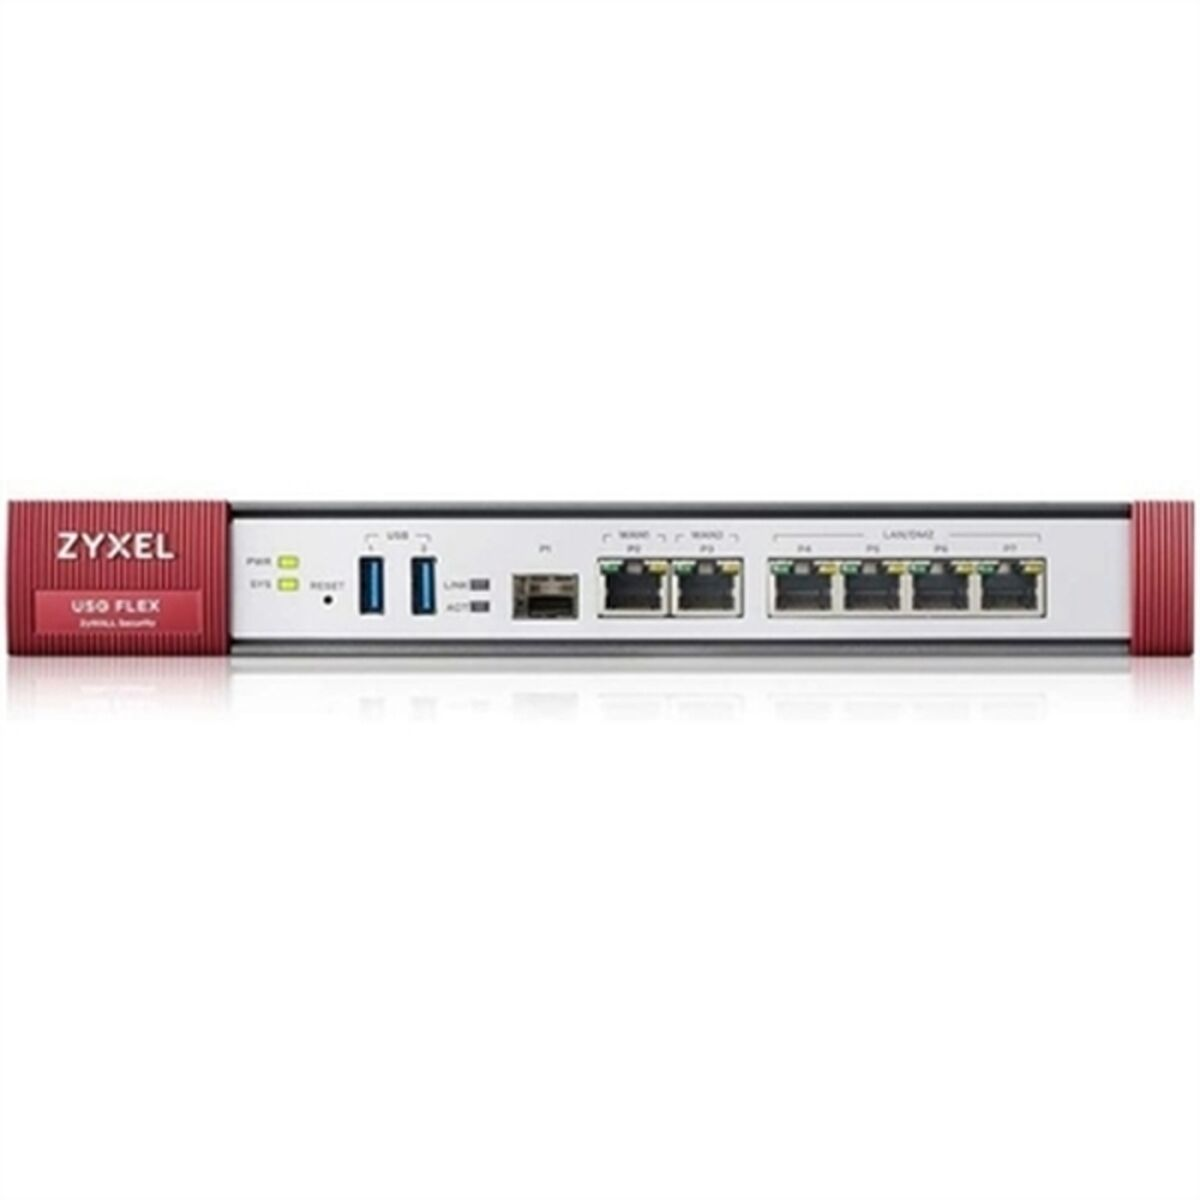 USGFLEX200-EU0102F Firewall ZYXEL